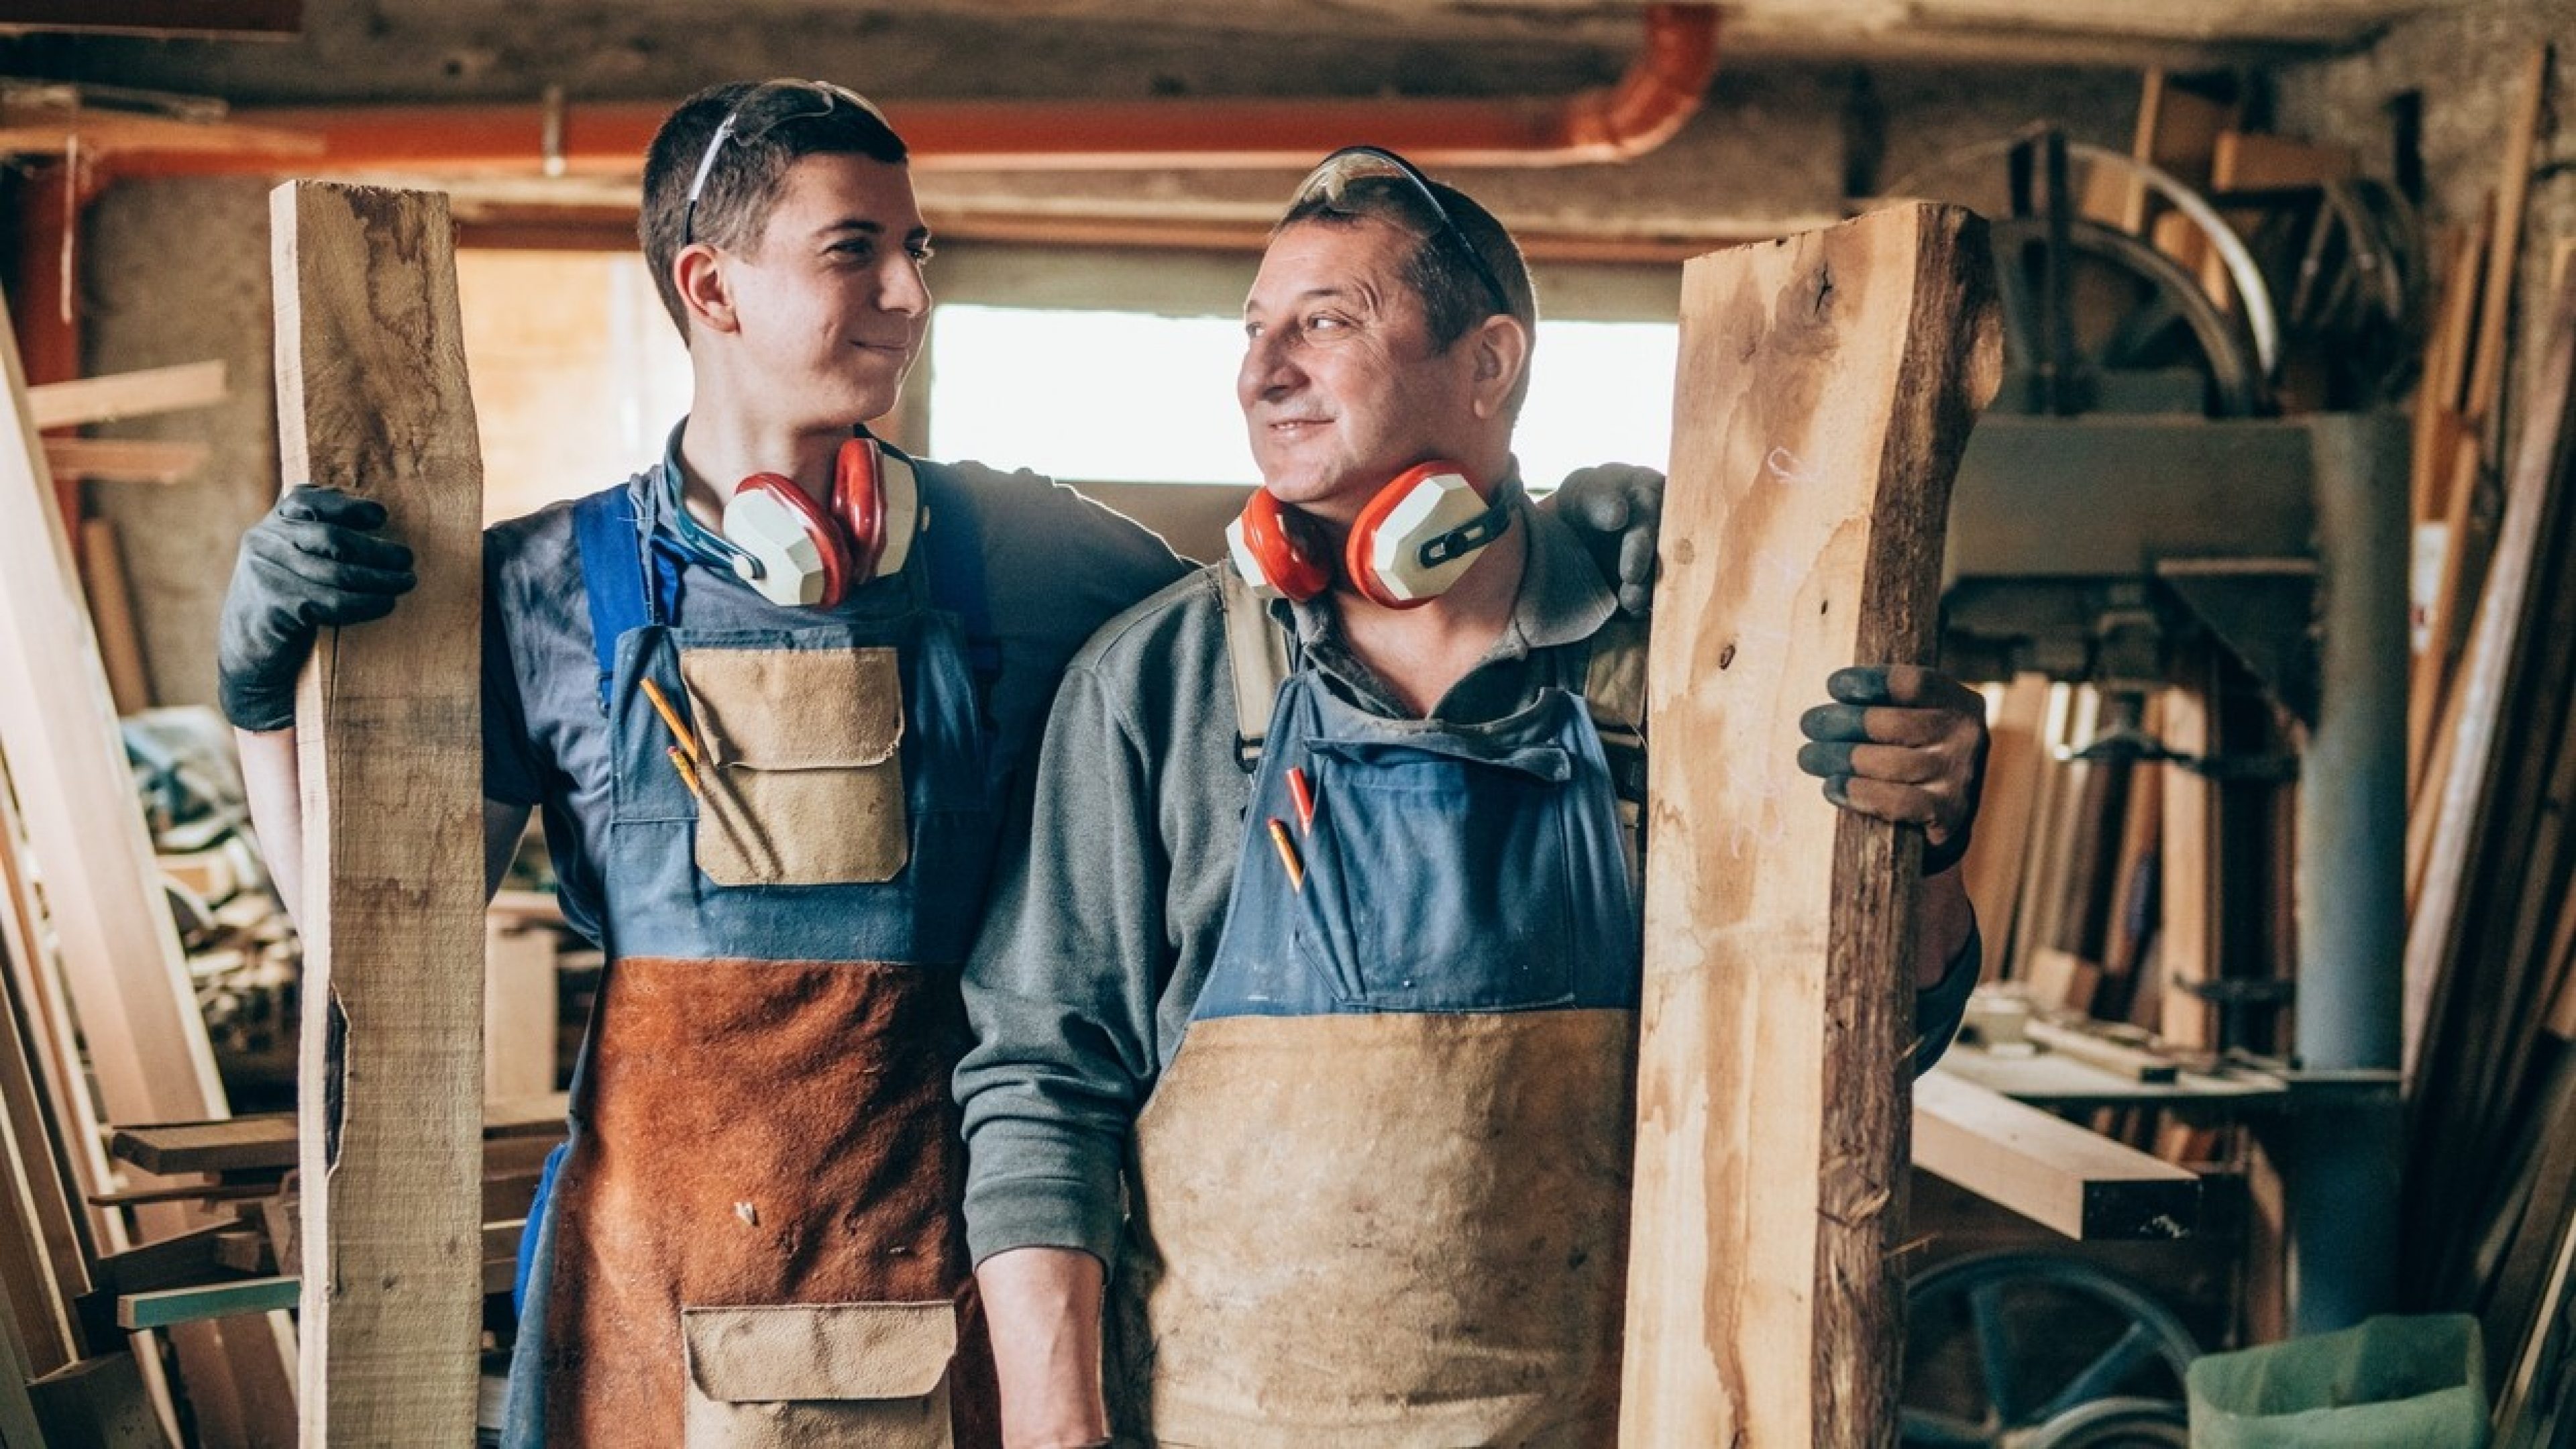 In un’officina due collaboratori di diverse generazioni tengono in mano un’asse di legno.